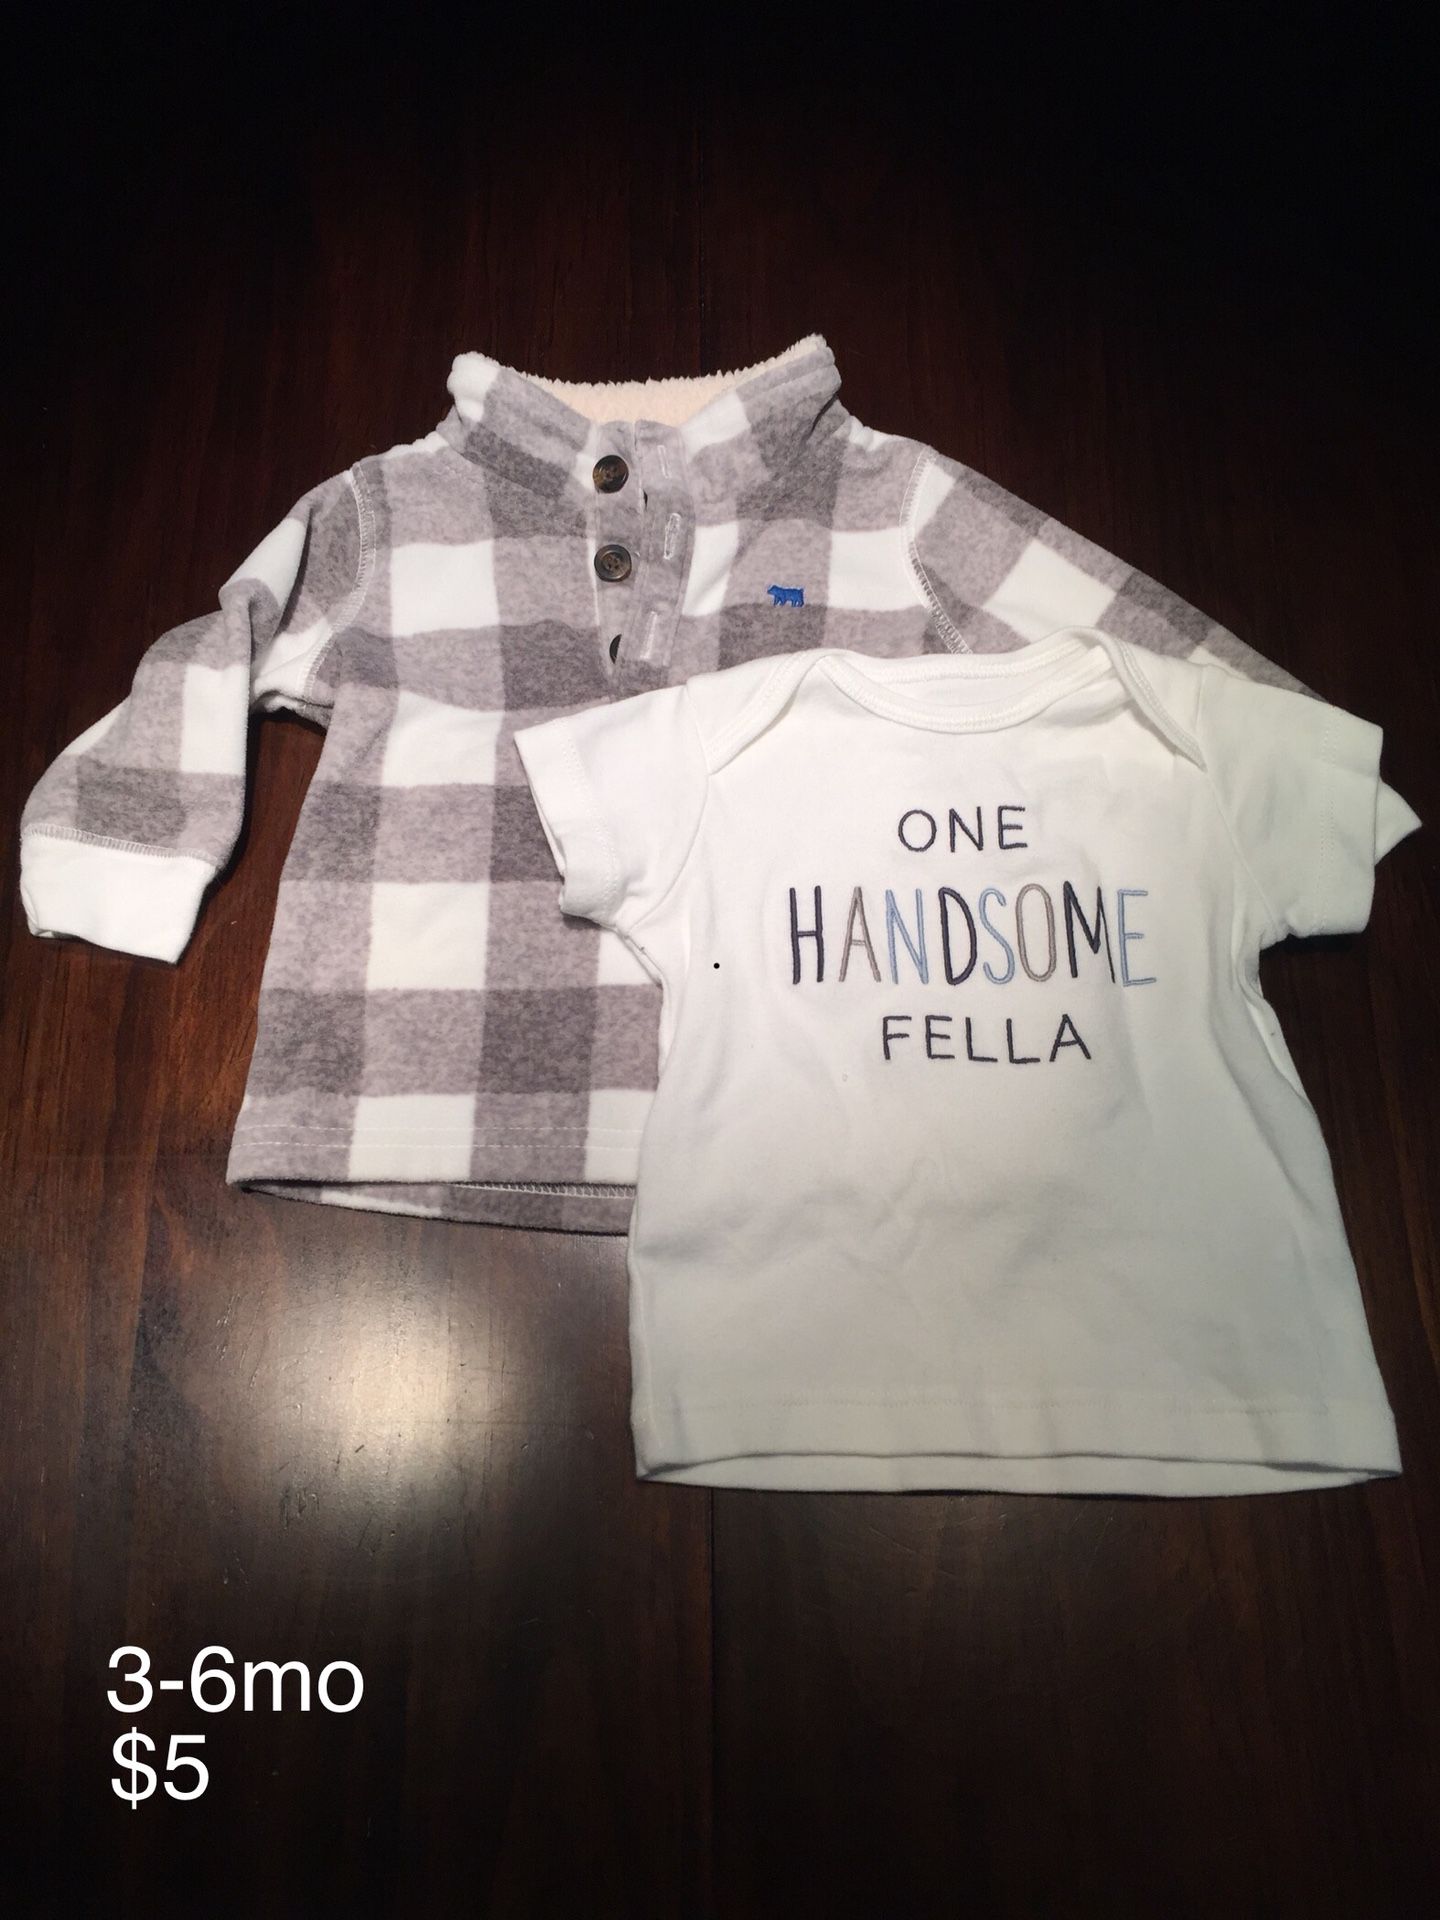 3-6mo Baby Boy Clothing